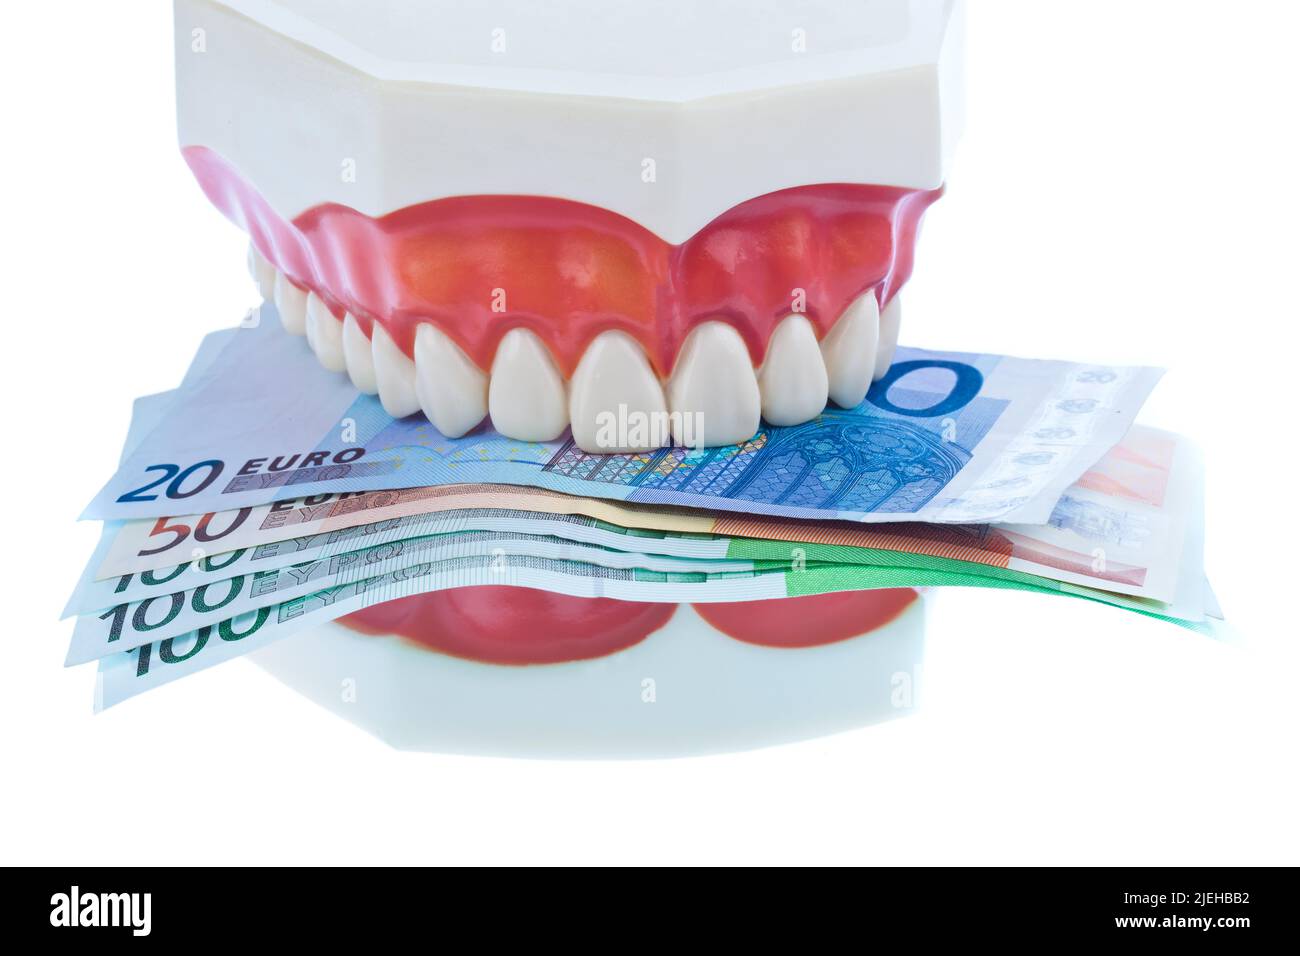 Ein Zahnmodell beim Zahnarzt mit Euroscheinen. Kosten für Gesundheit. Stock Photo